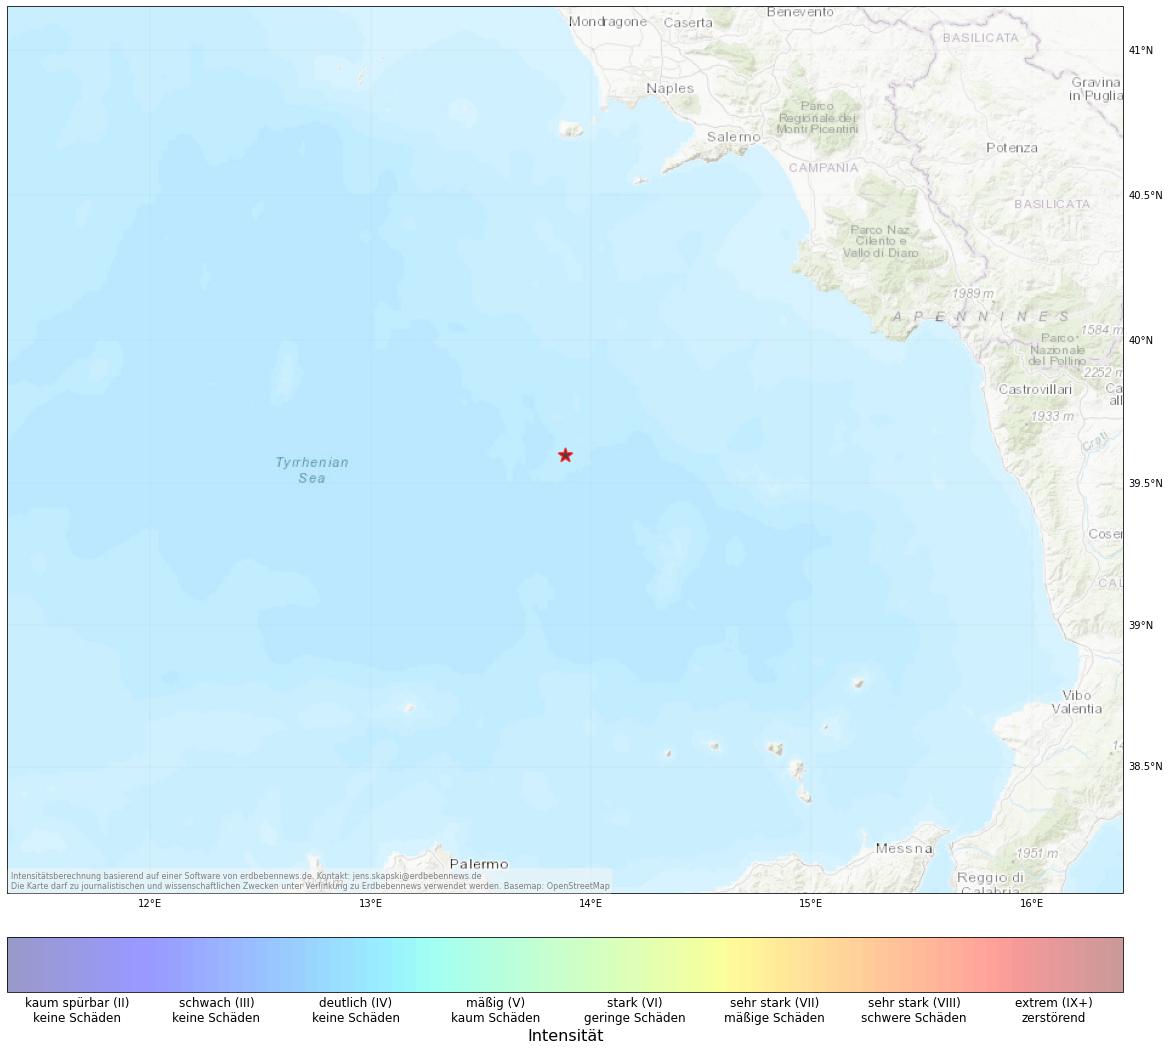 Berechnete Intensität (ShakeMap) des Erdbebens der Stärke 4.6 am 20. November, 7:46 Uhr in Italien